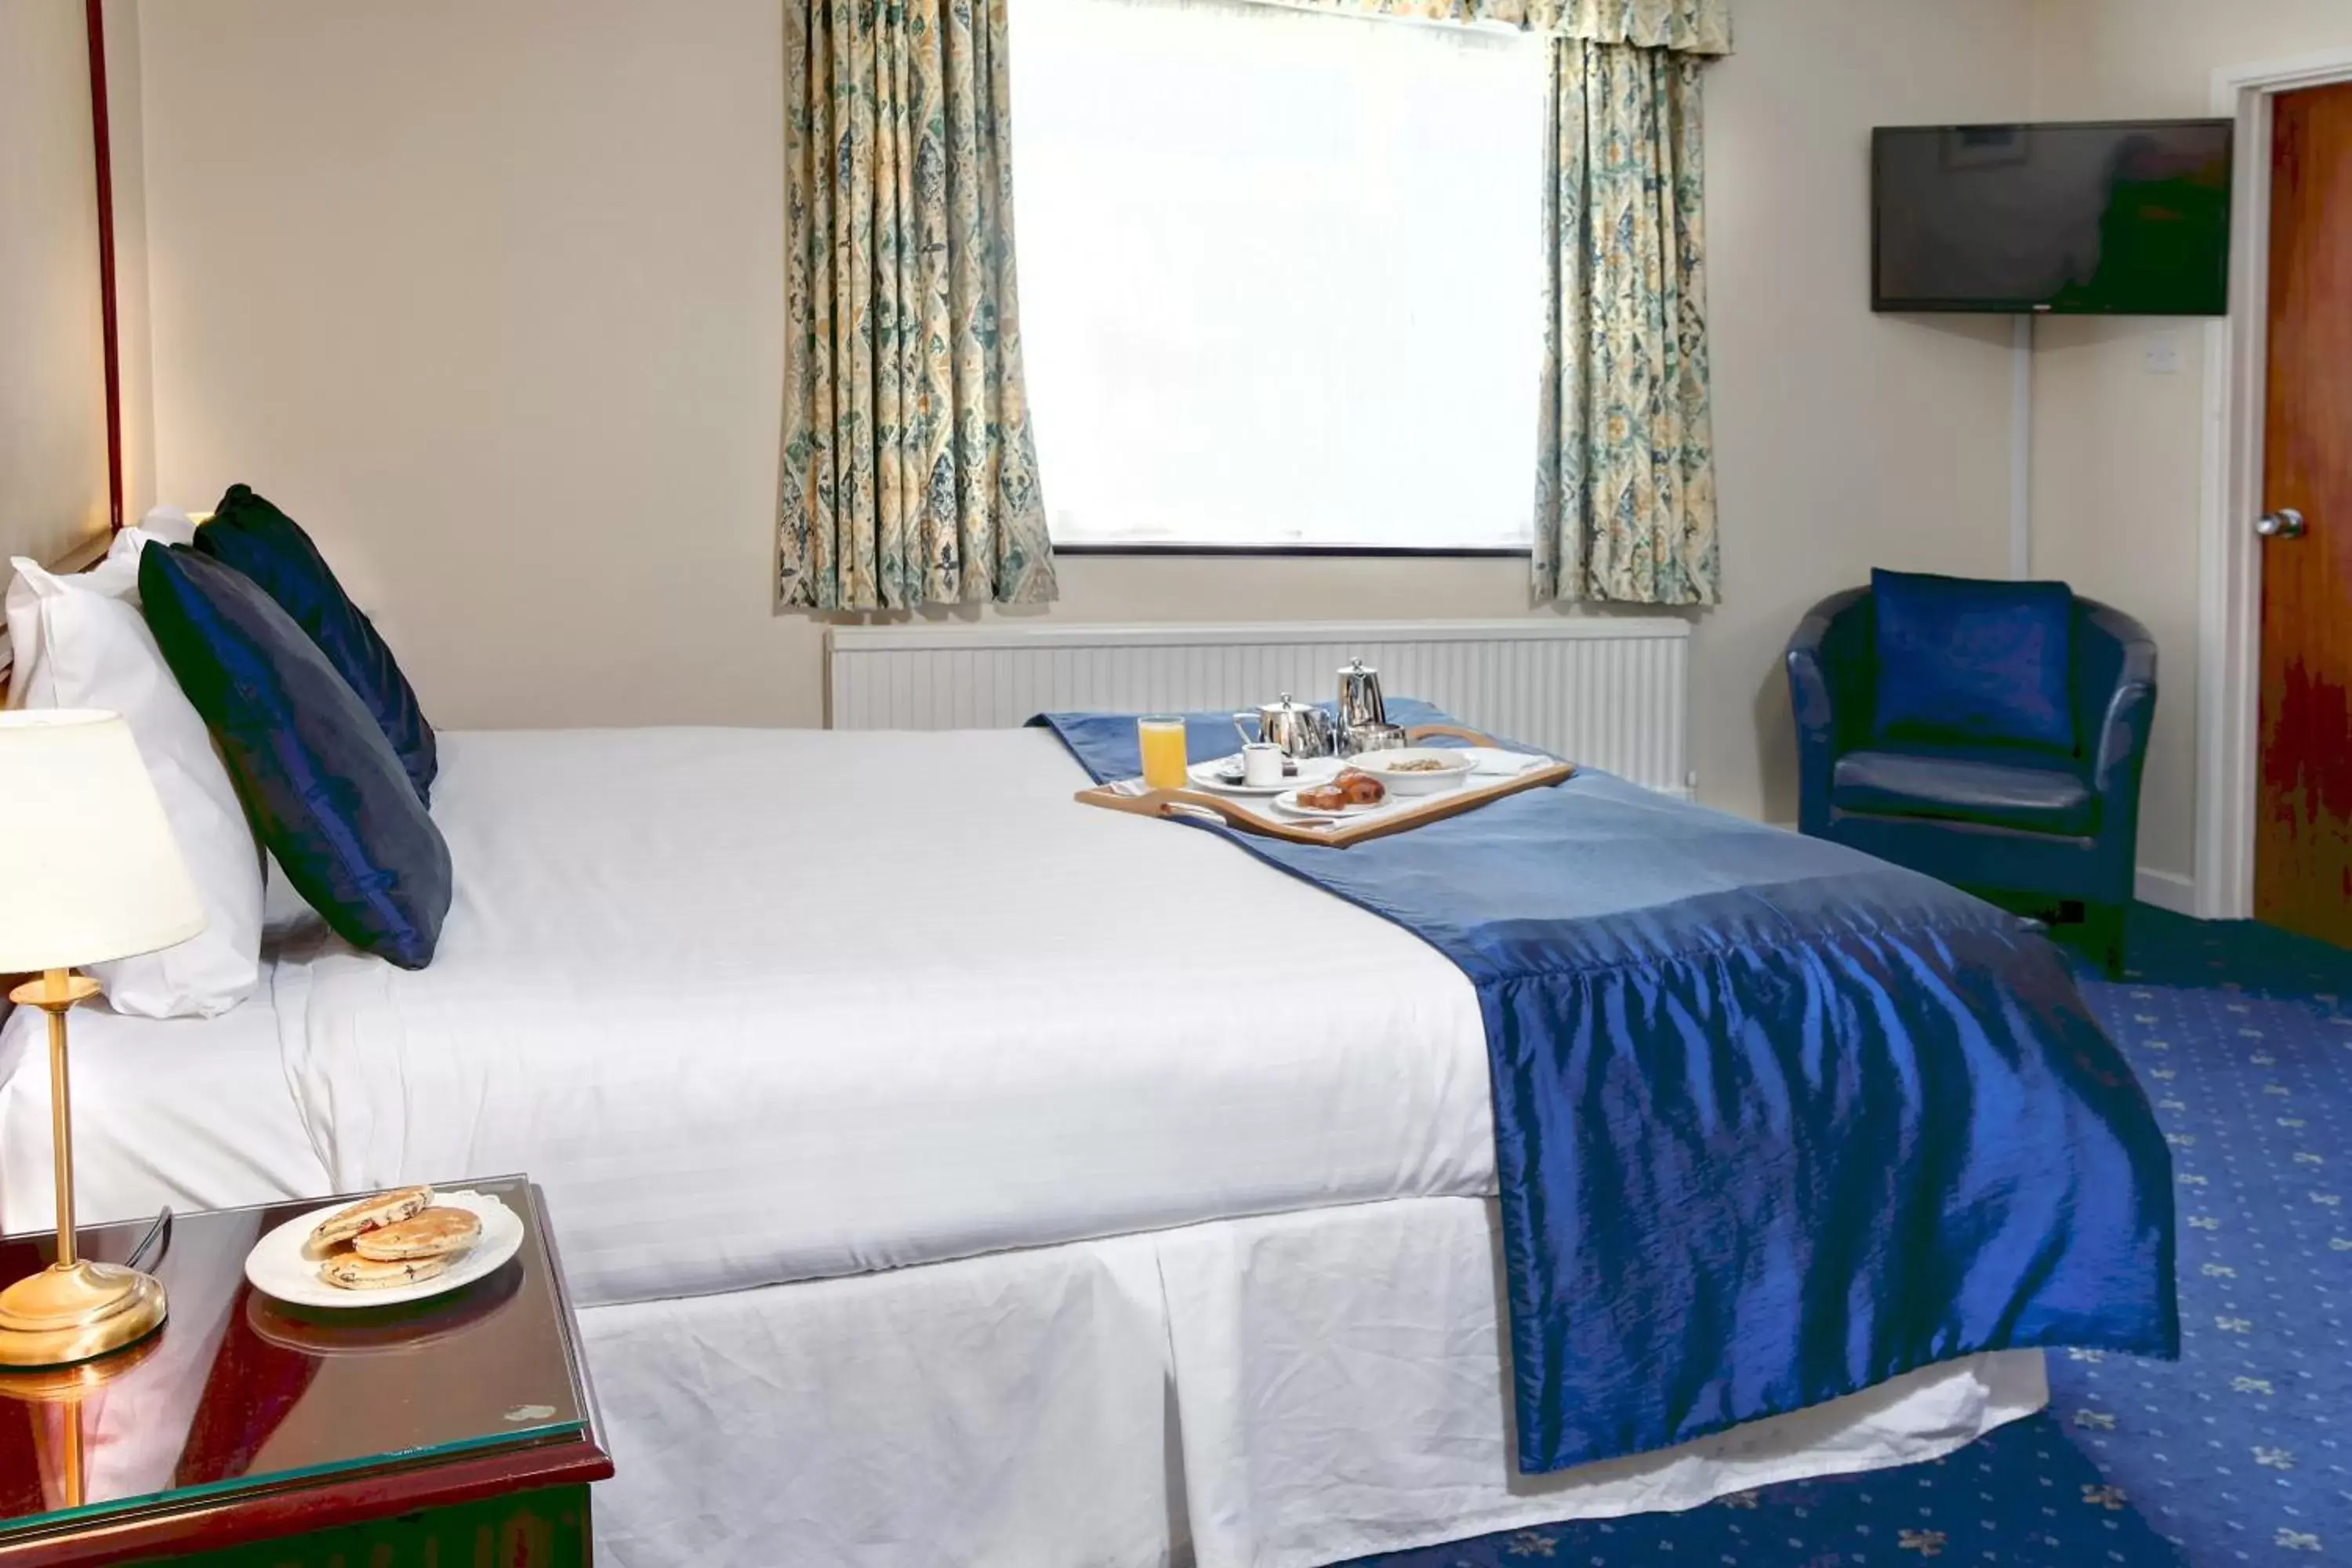 Bedroom, Bed in Best Western Heronston Hotel & Spa